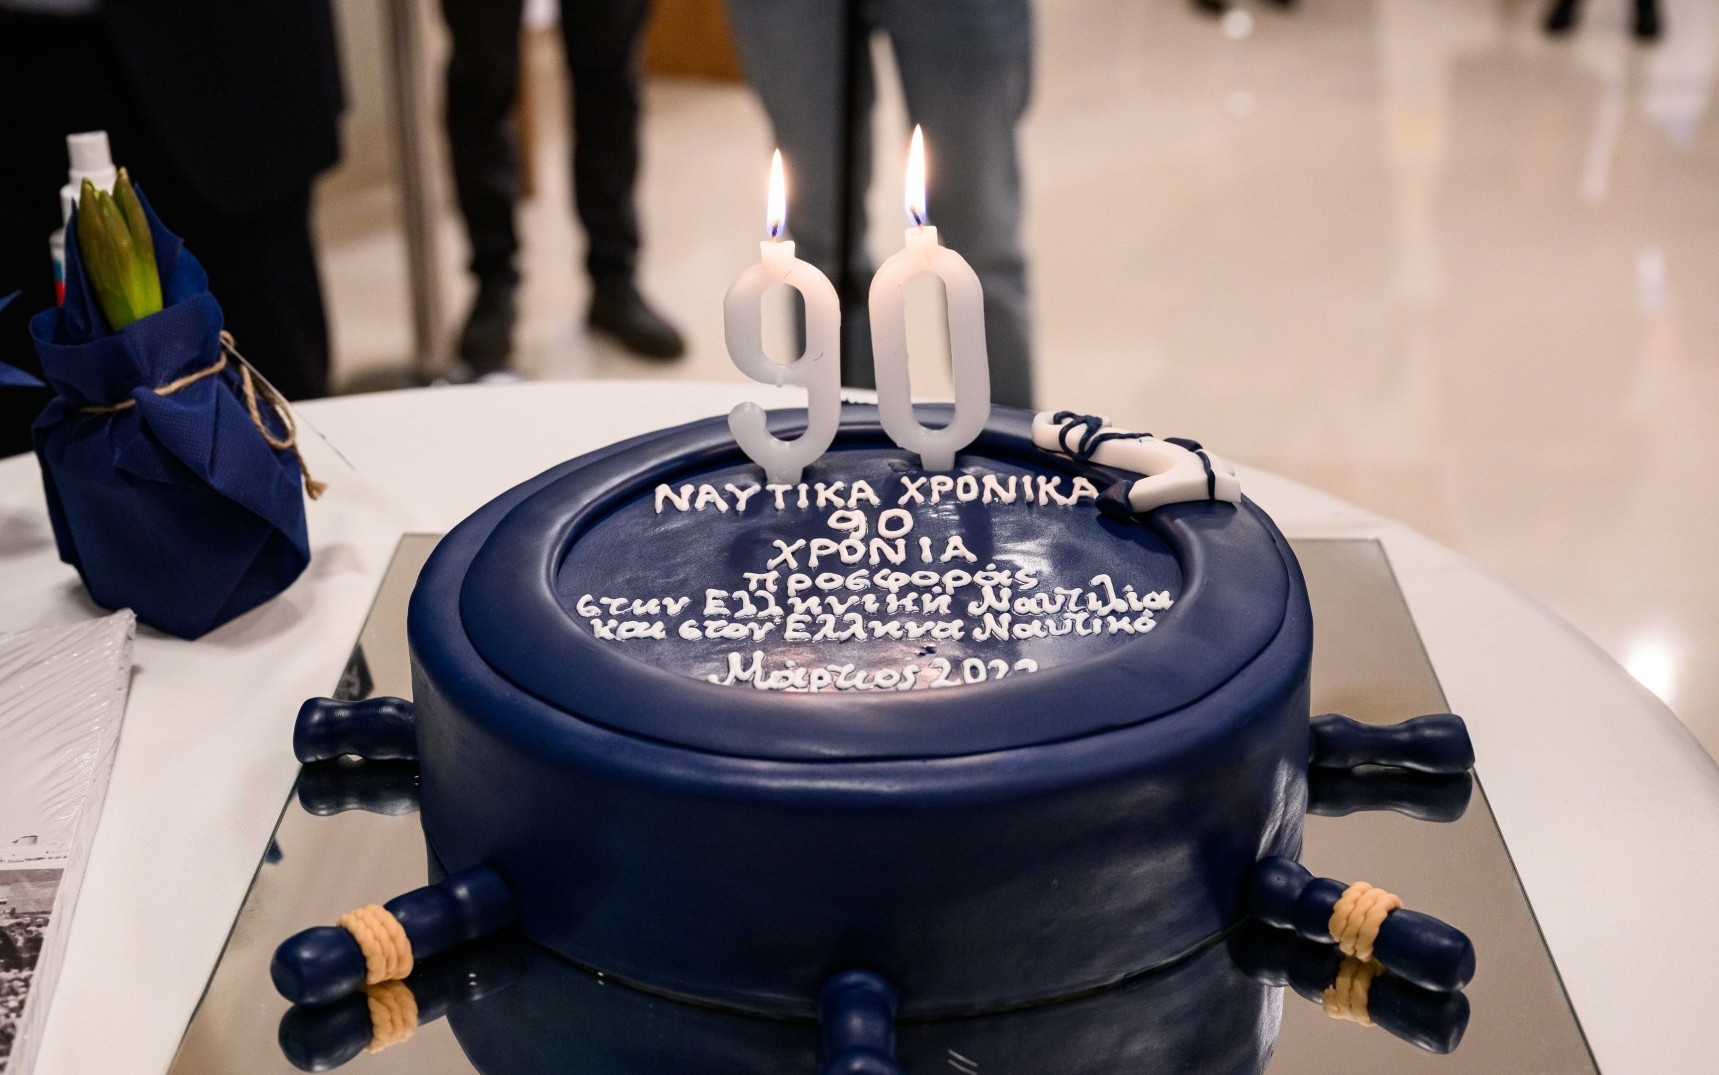 Η γενέθλια τούρτα των Ναυτικών Χρονικών προσφέρθηκε από τον καπτ. Γιάννη Τσούρα (Alpha Bulkers)